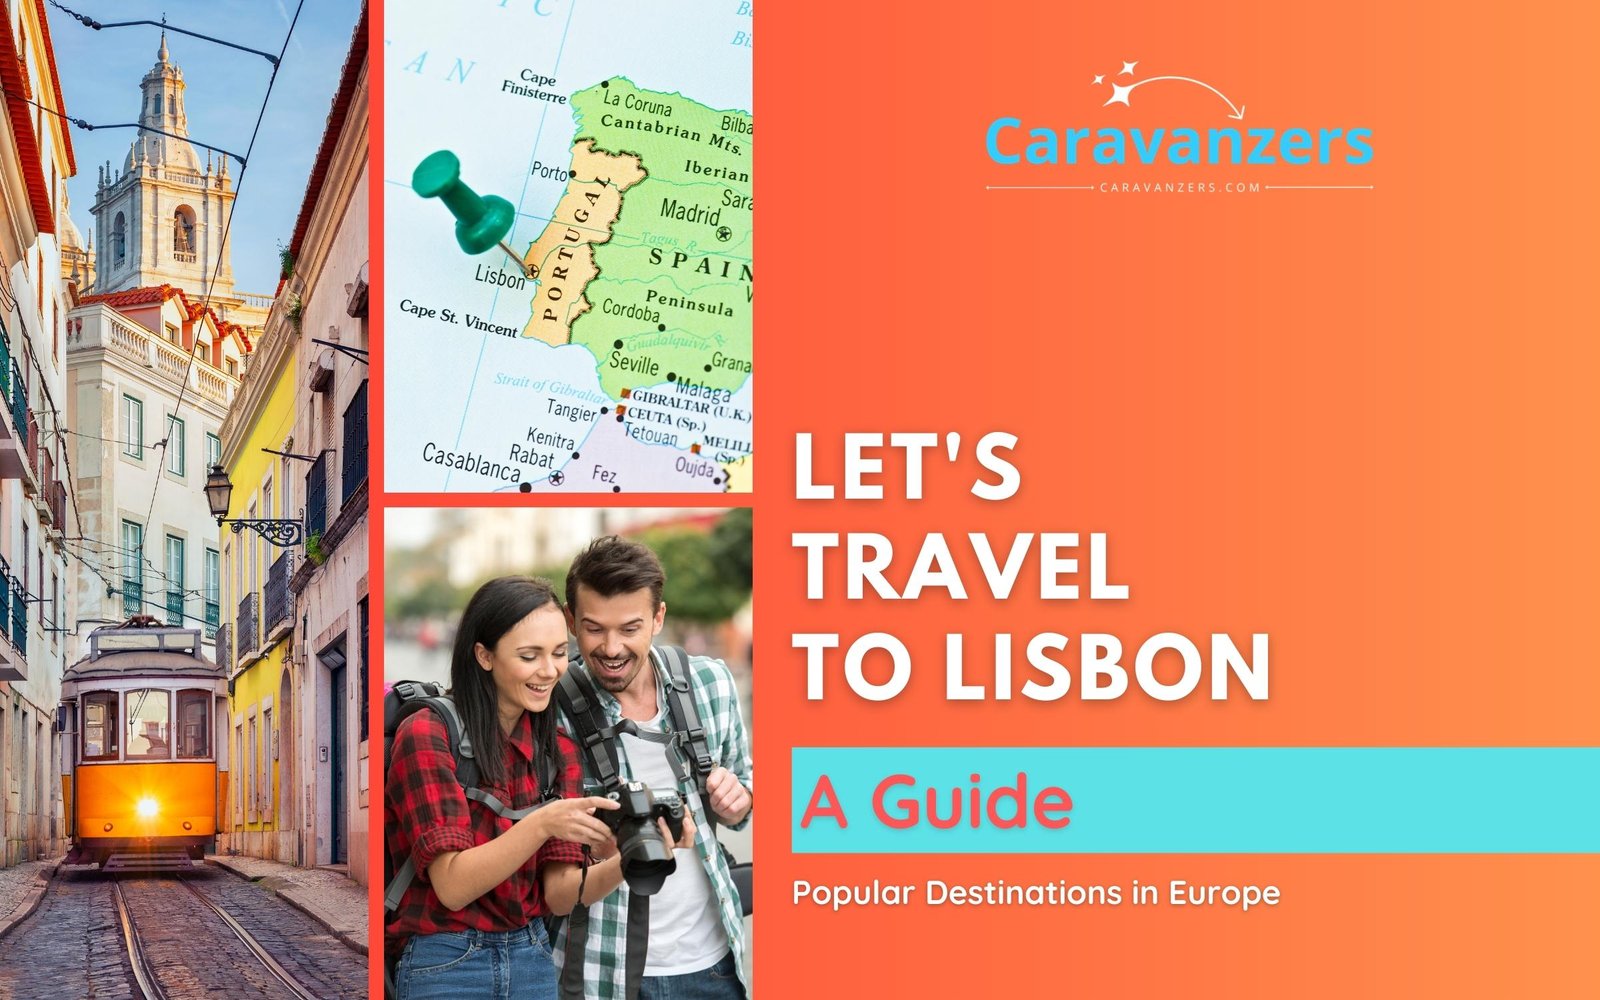 Lisbon Travel Guide - This Portuguese Destination Is Beautiful - Caravanzers